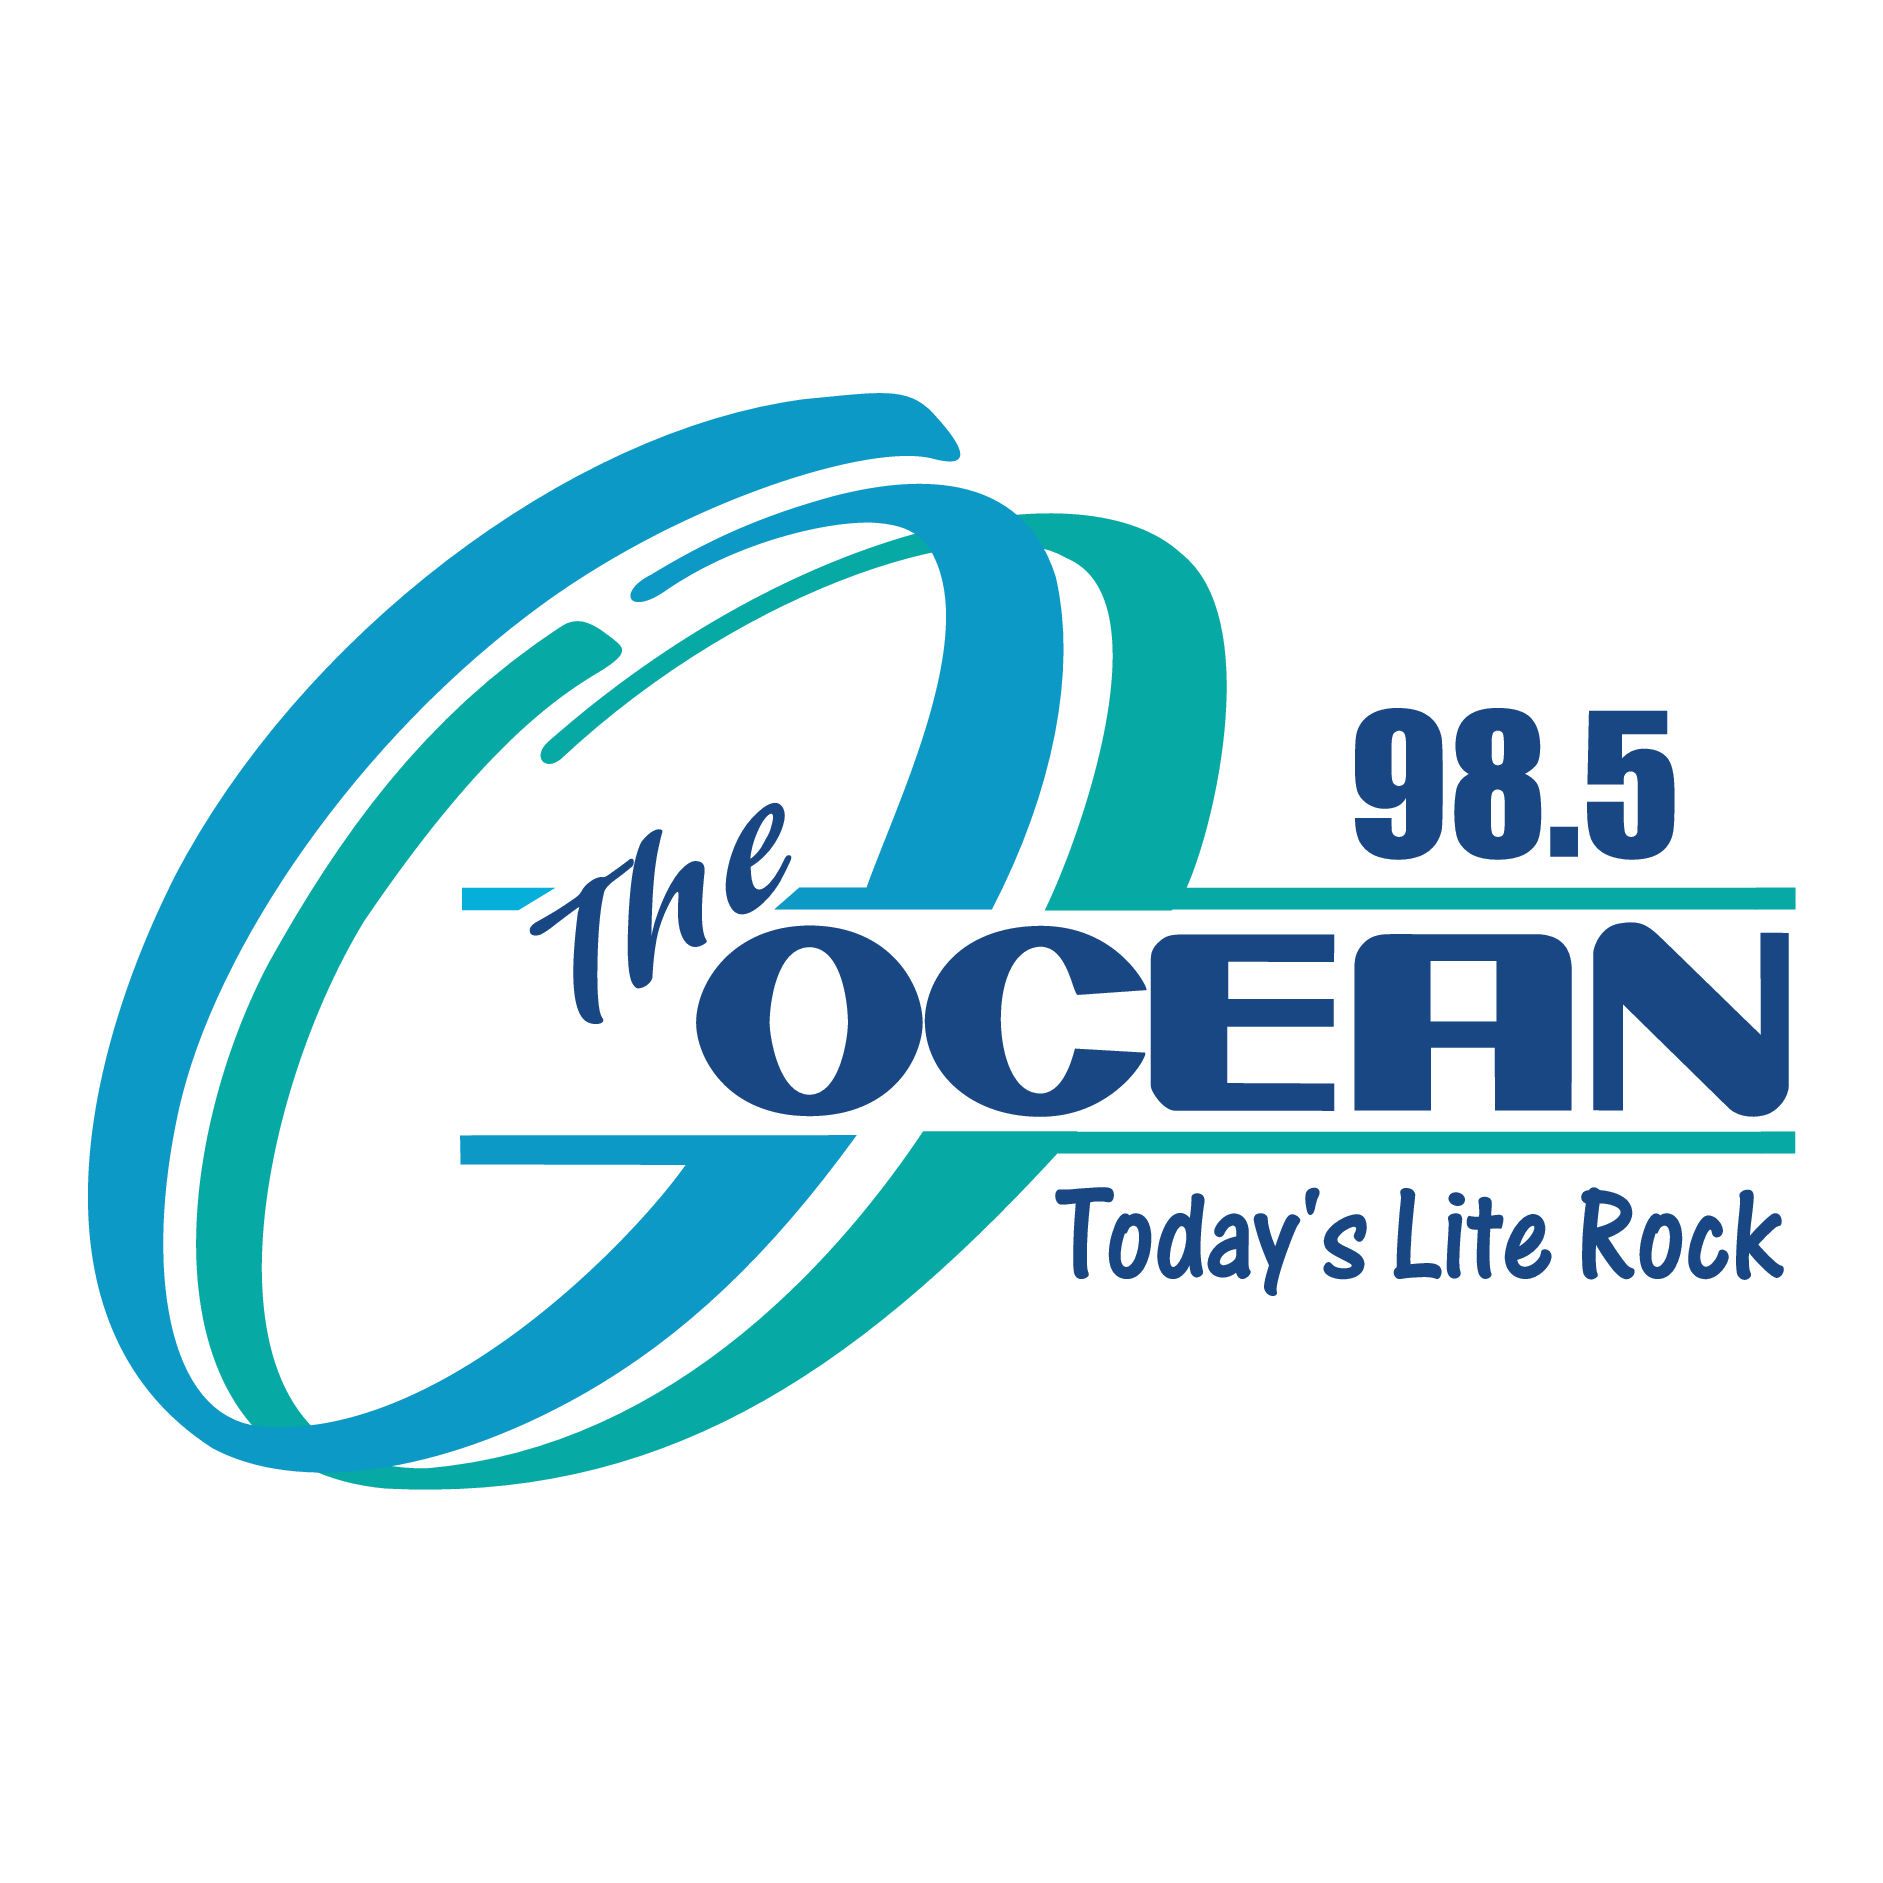 98.5 The Ocean Logo